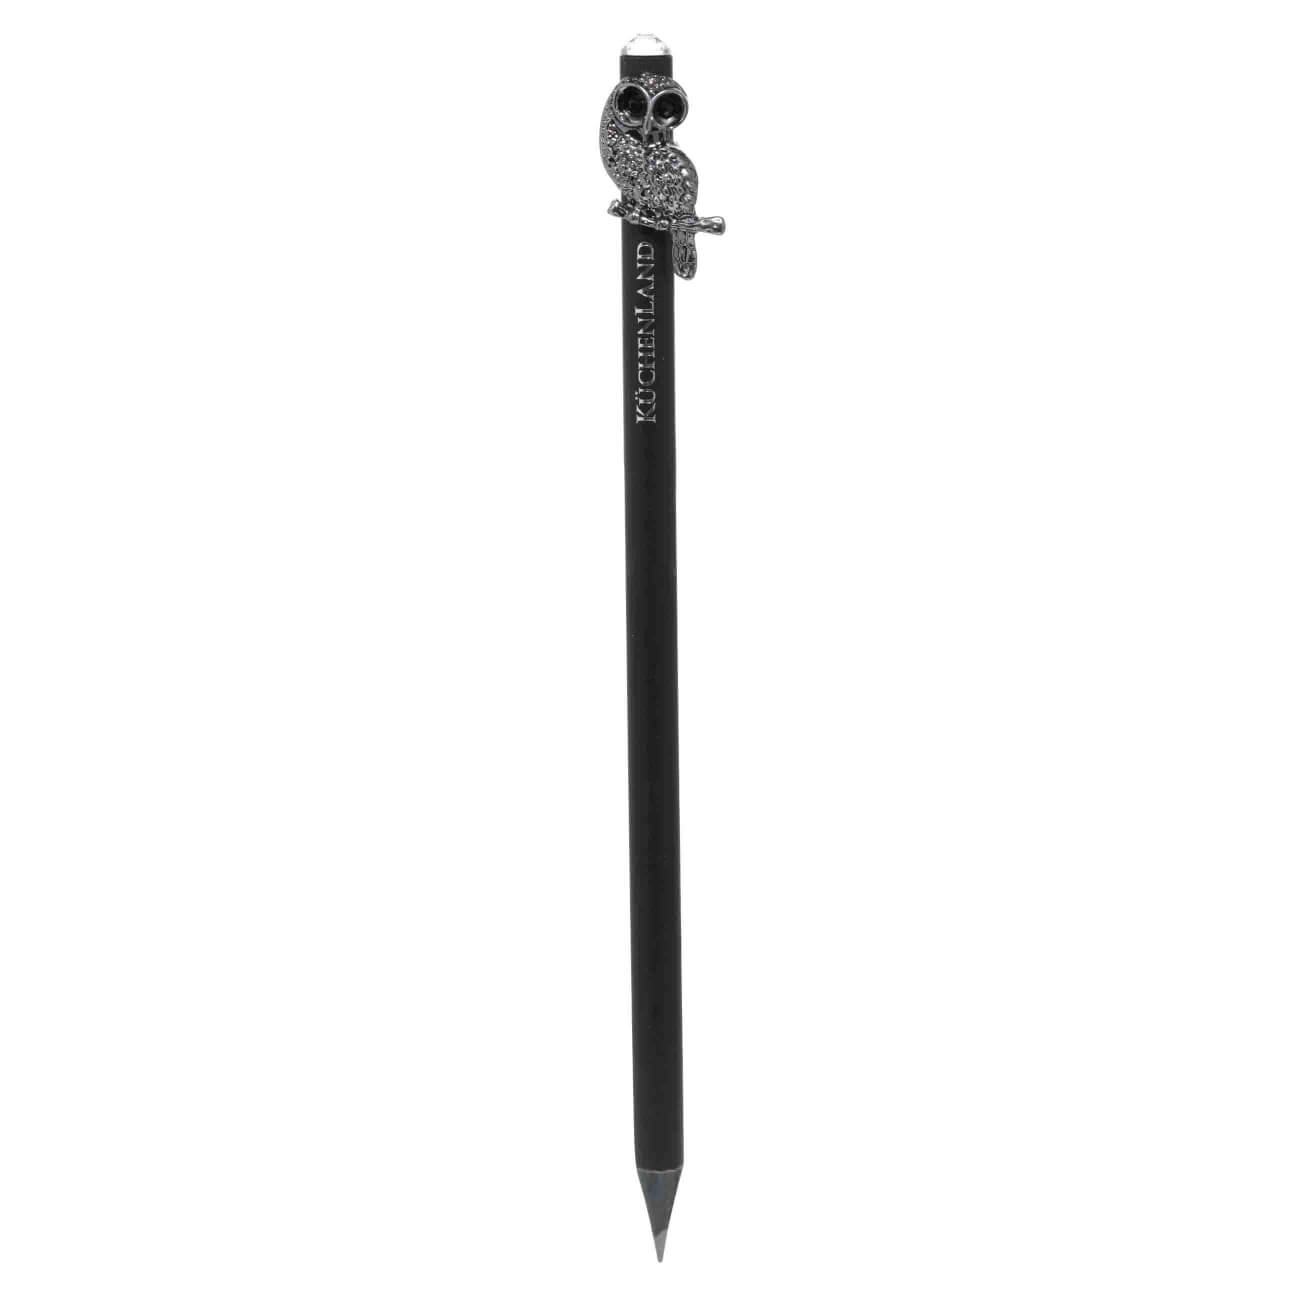 Карандаш, 18 см, чернографитный, с фигуркой, черный, Сова, Draw figure чернографитный карандаш berlingo